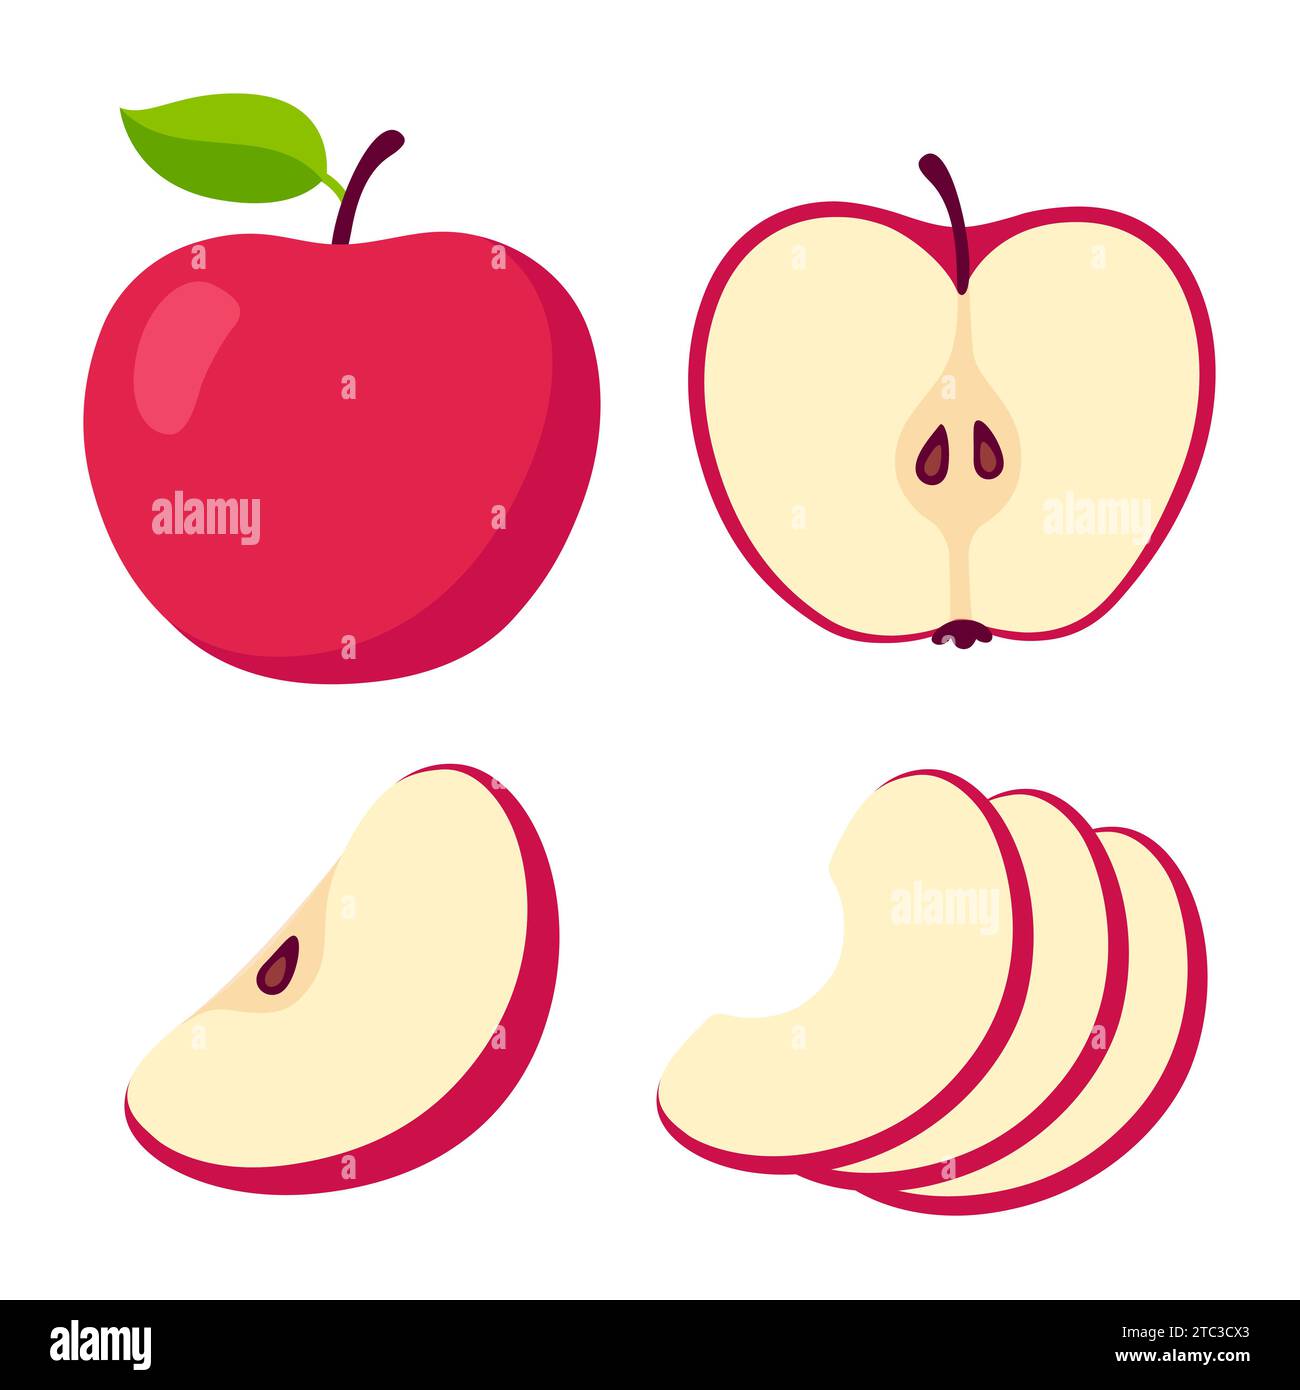 Set de dessin animé pomme rouge. Coupe transversale de pomme coupée, tranches et fruits entiers, illustration vectorielle isolée. Illustration de Vecteur